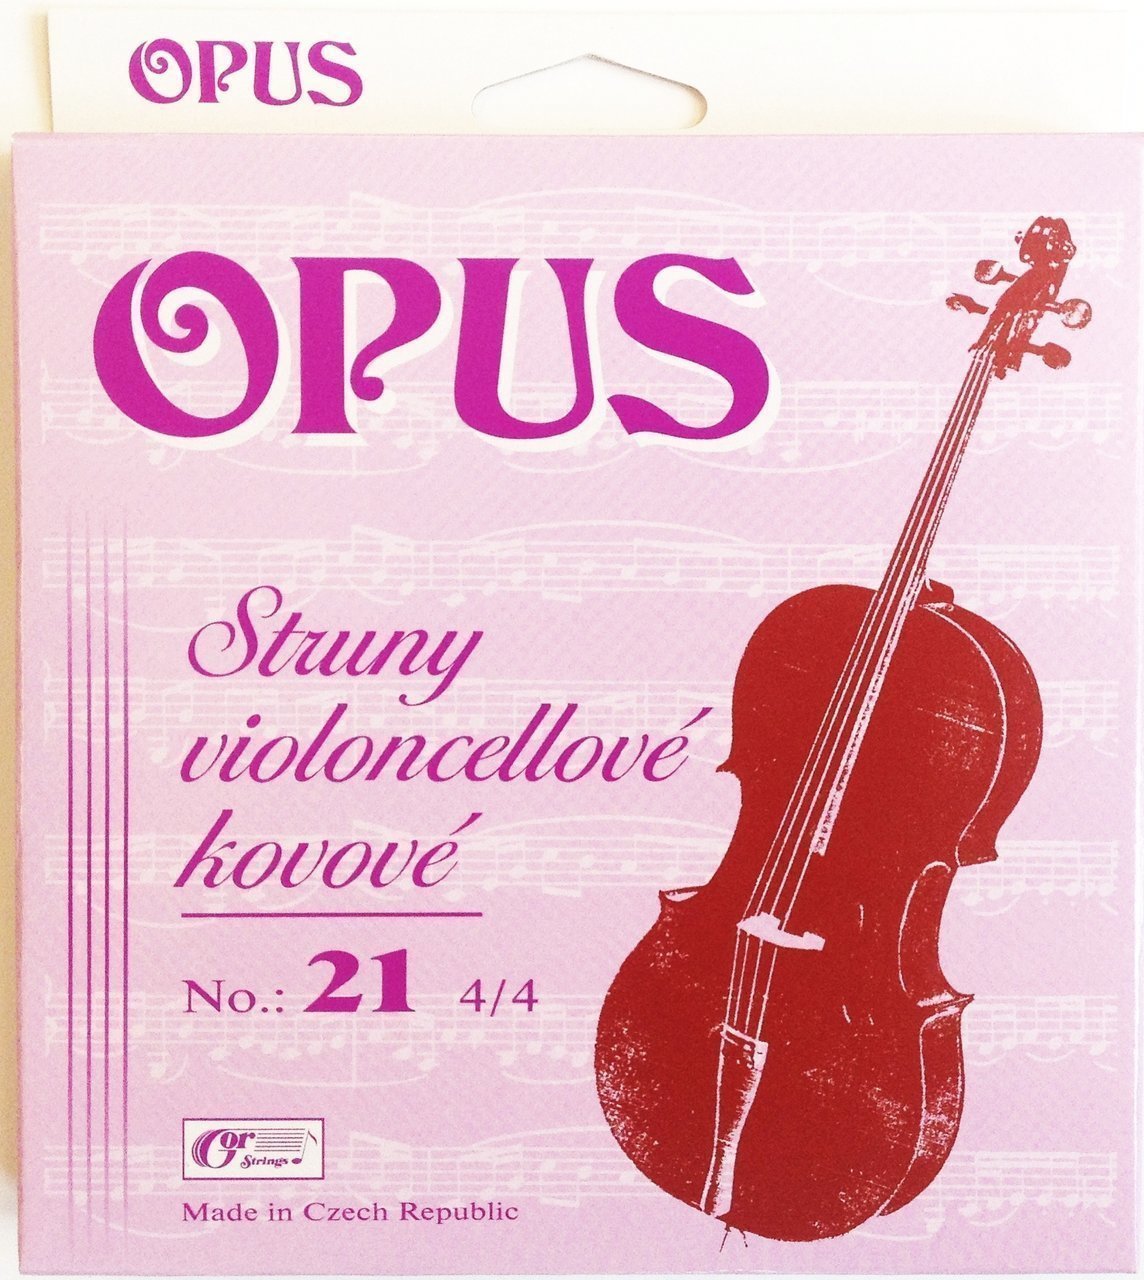 Cello Strings Gorstrings OPUS-21-A Cello Strings